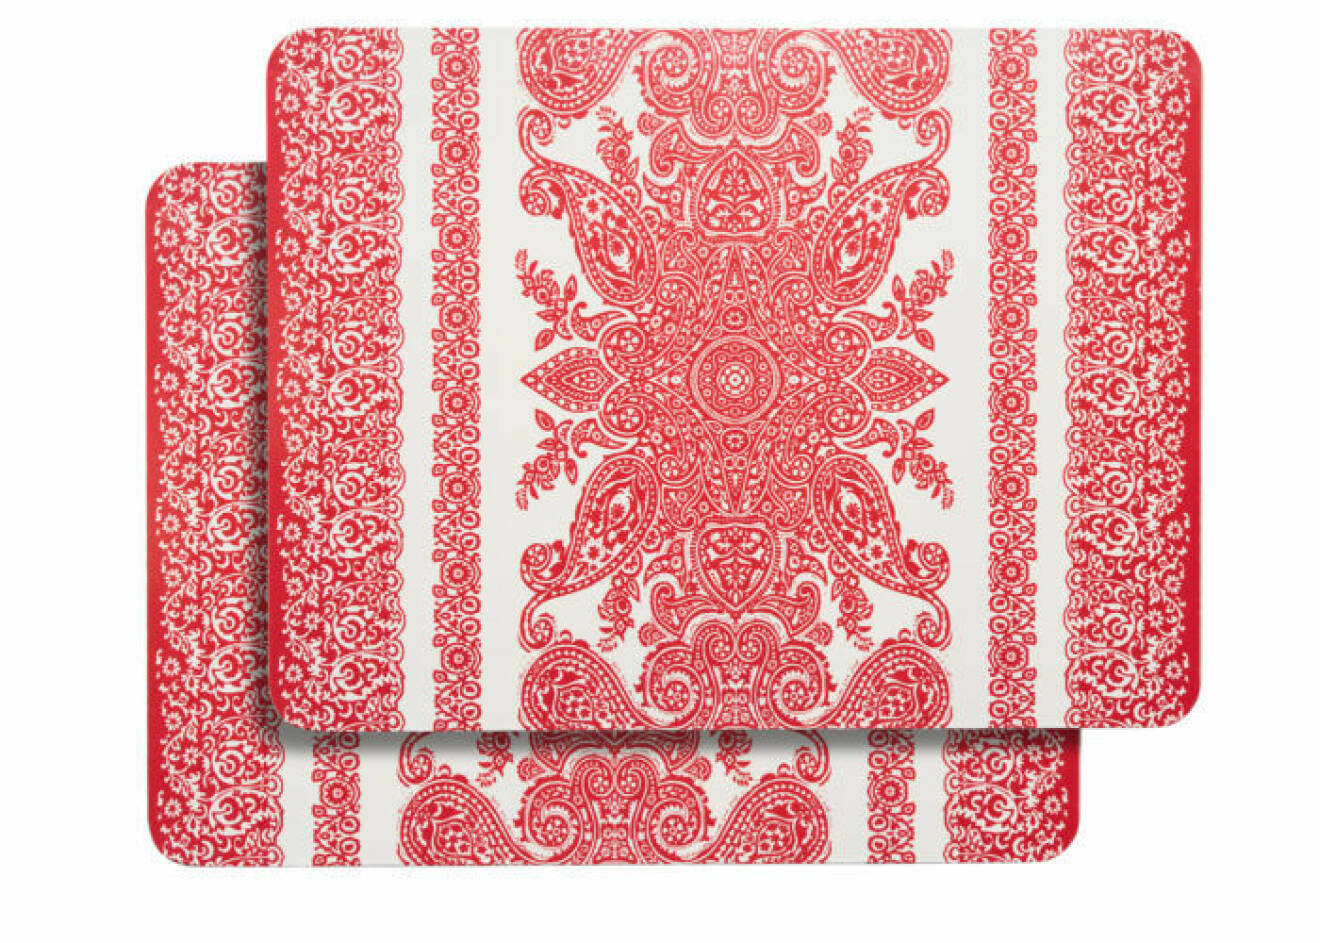 Röd kudde med tofsar och broderat mönster i rosa, från Åhléns